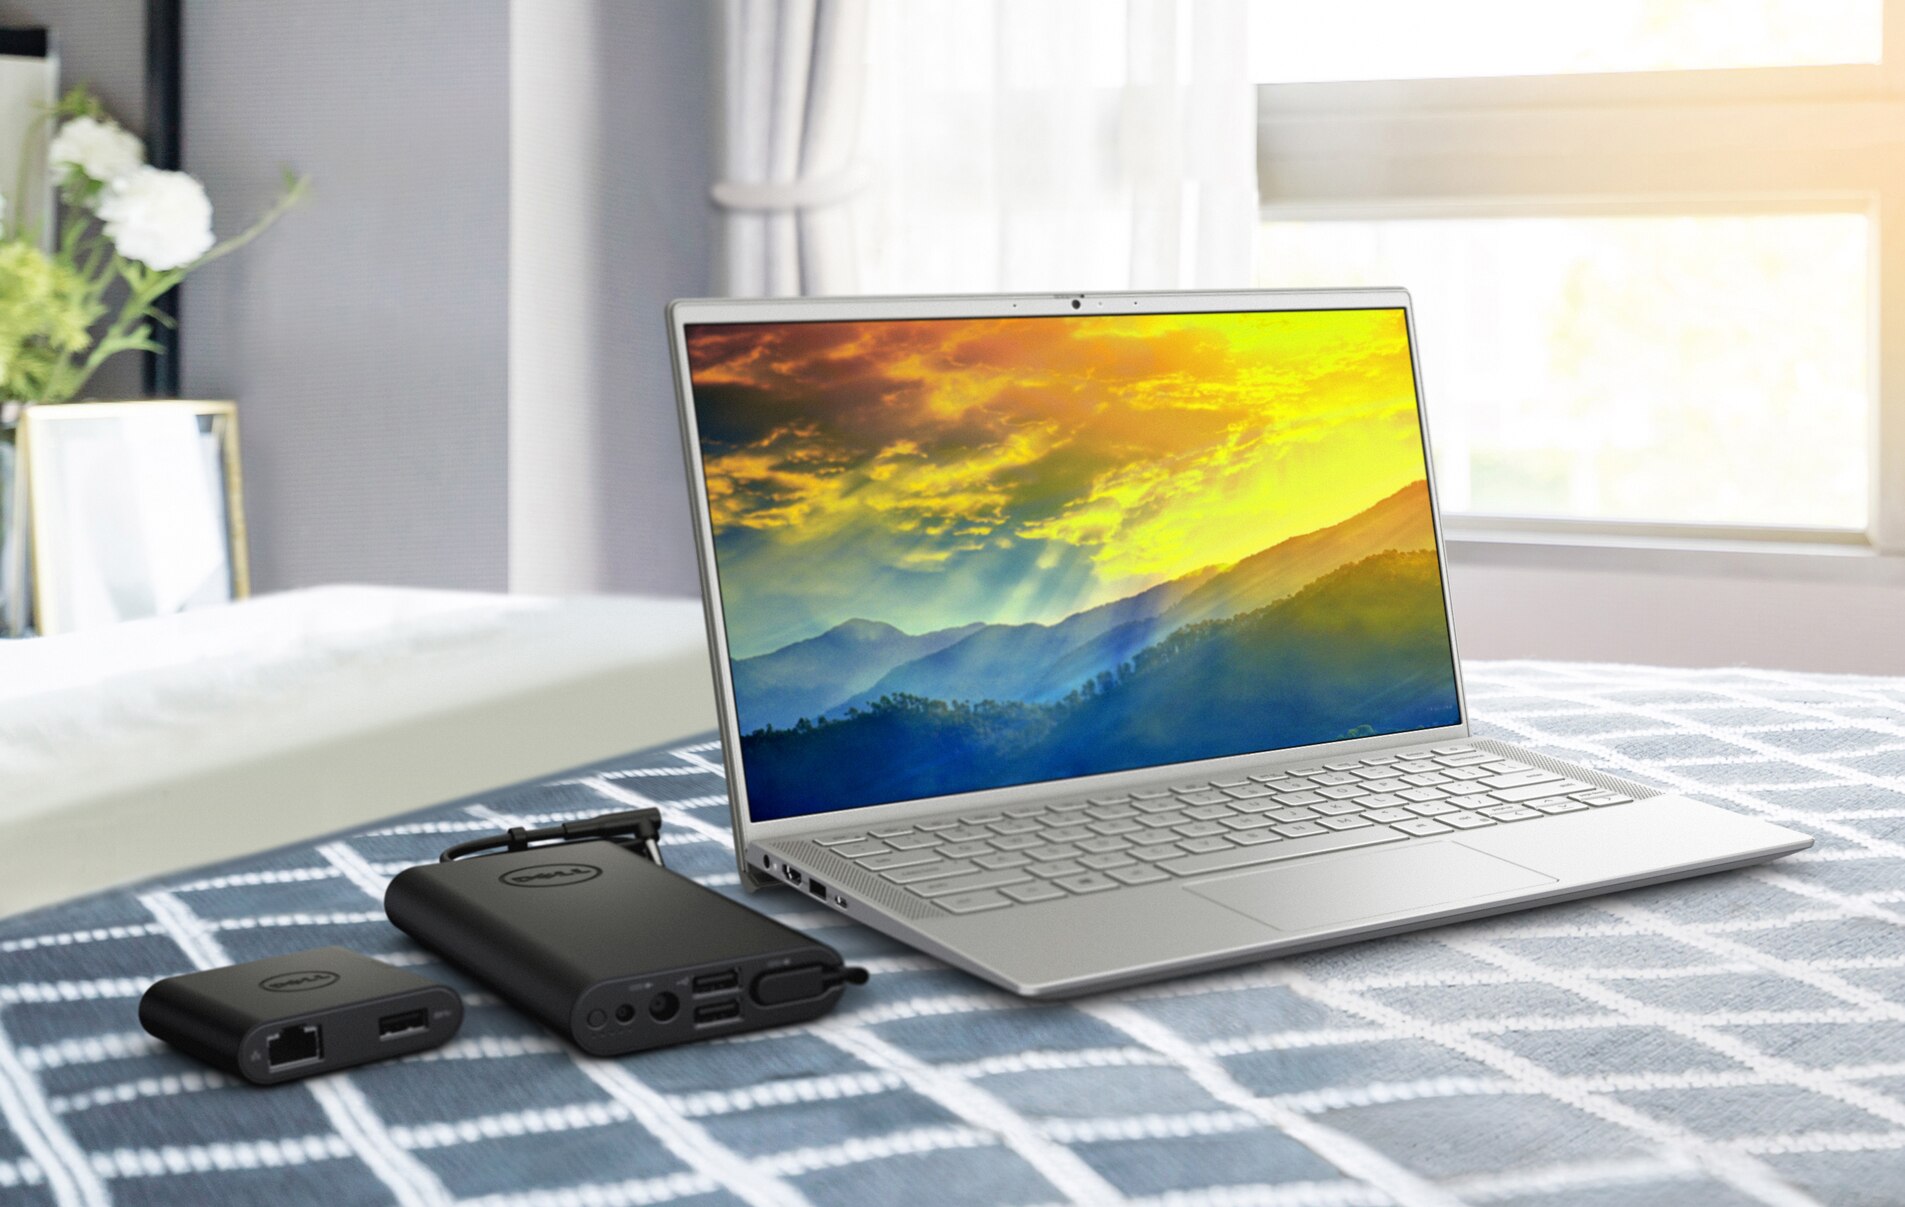 Imagem de um notebook Dell com fundo colorido na tela e carregadores de bateria ao lado do produto.